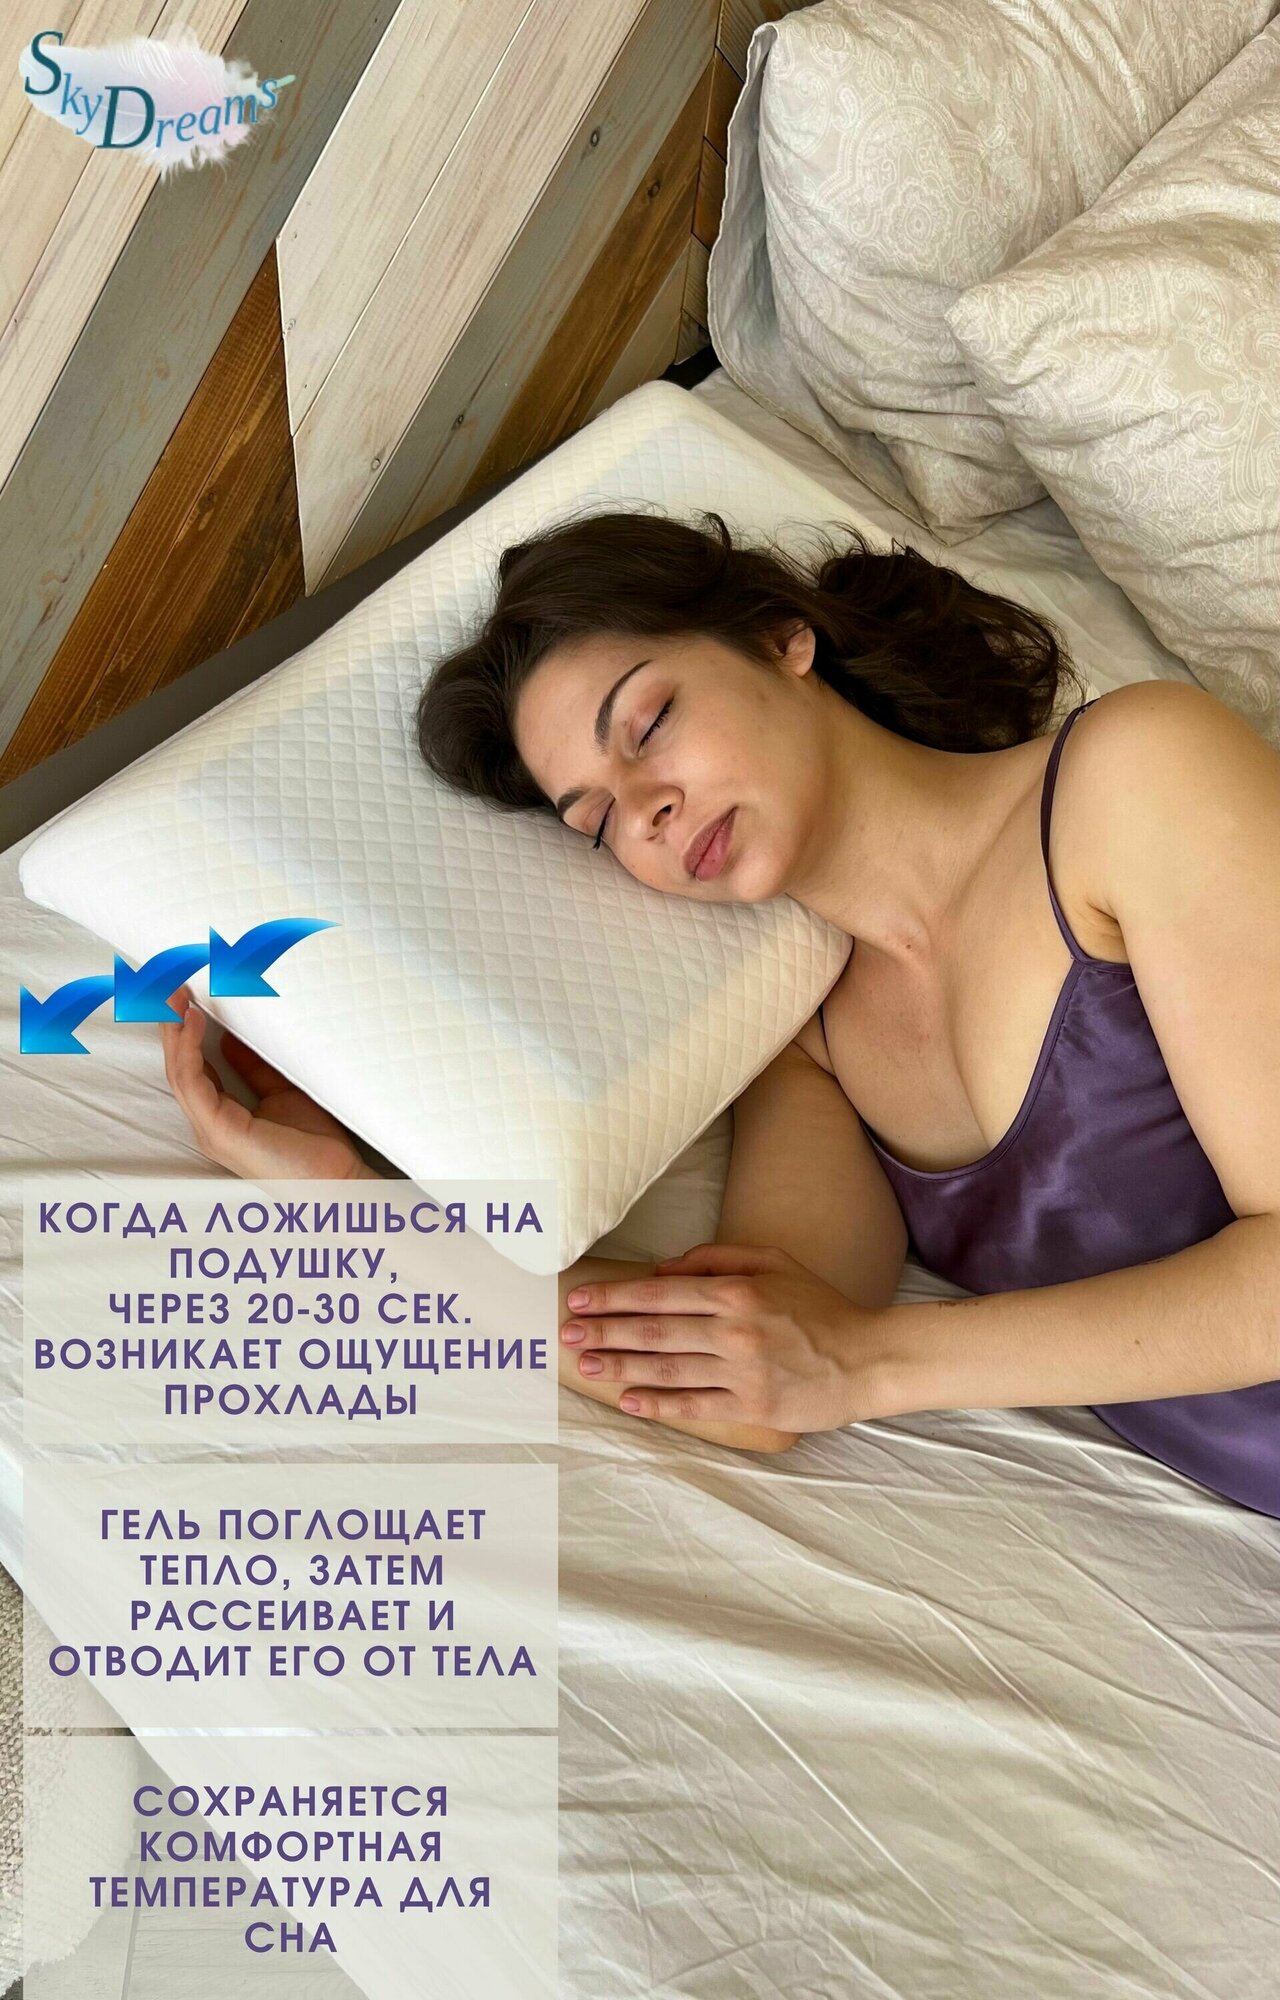 Двусторонняя анатомическая подушка "SkyDreams" Classic Gel с охлаждающим гелем и эффектом памяти, 60х40х12 см - фотография № 5